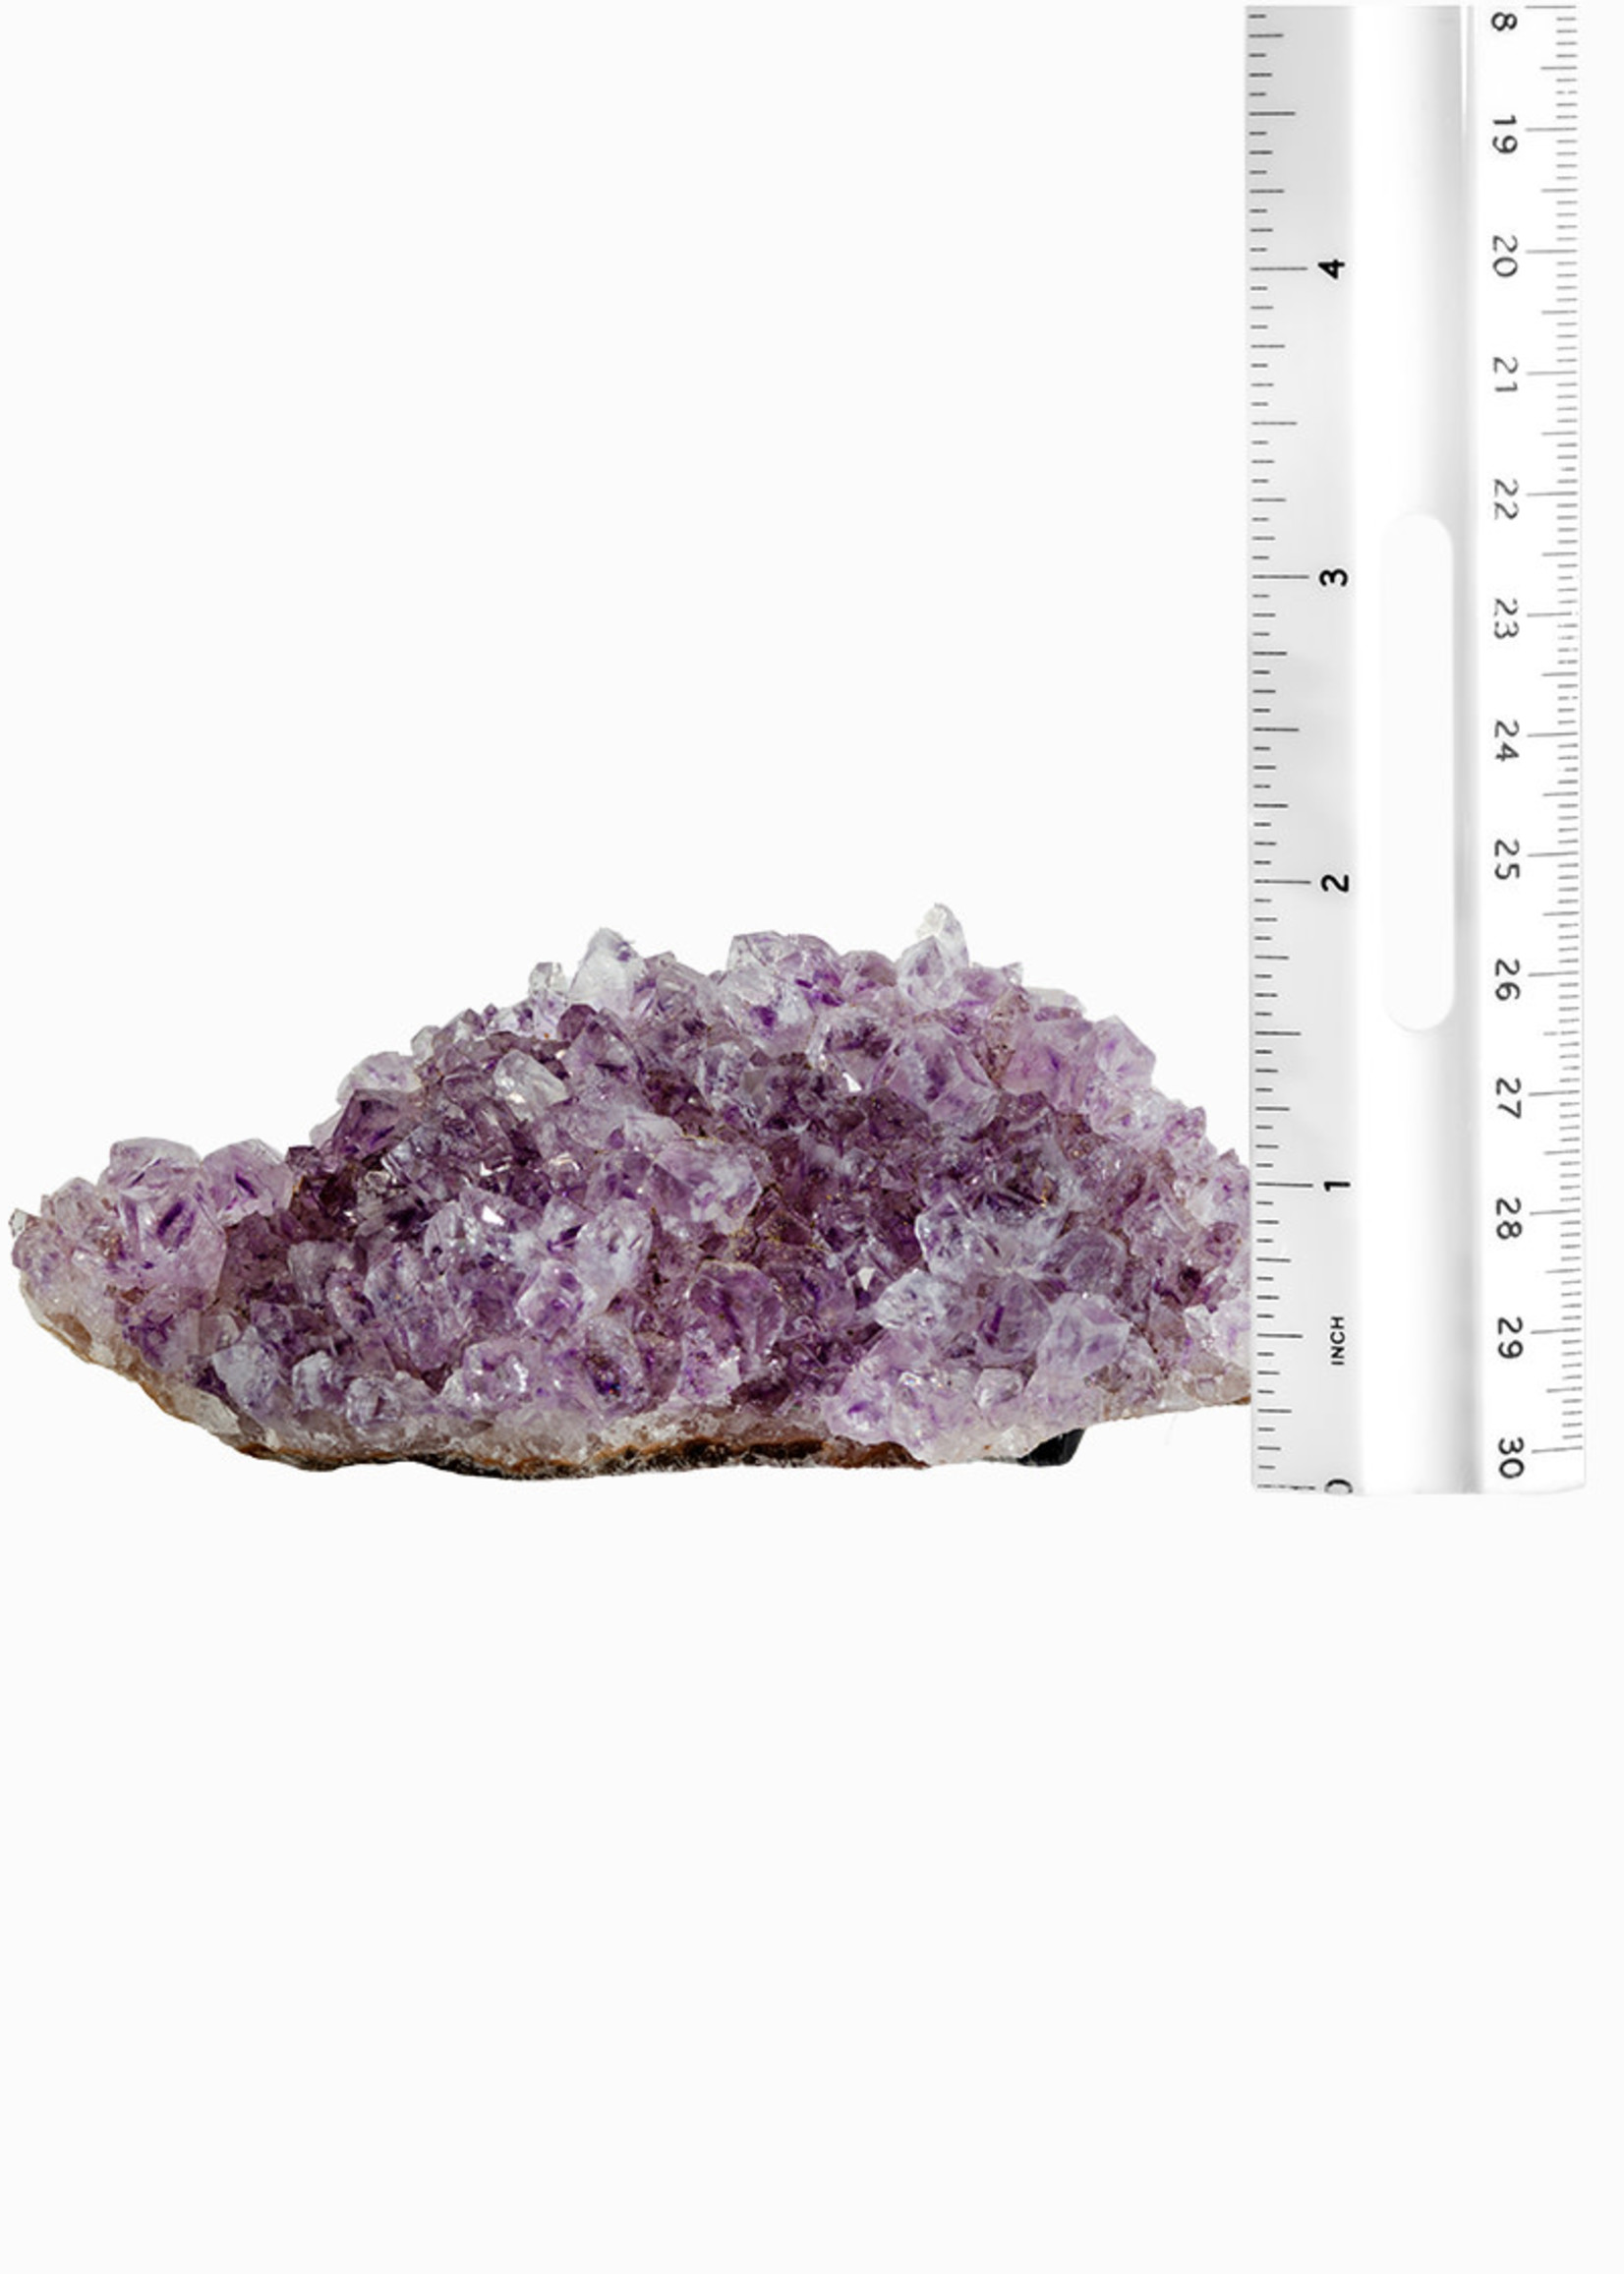 Minerals & Mystics Amethyst Cluster